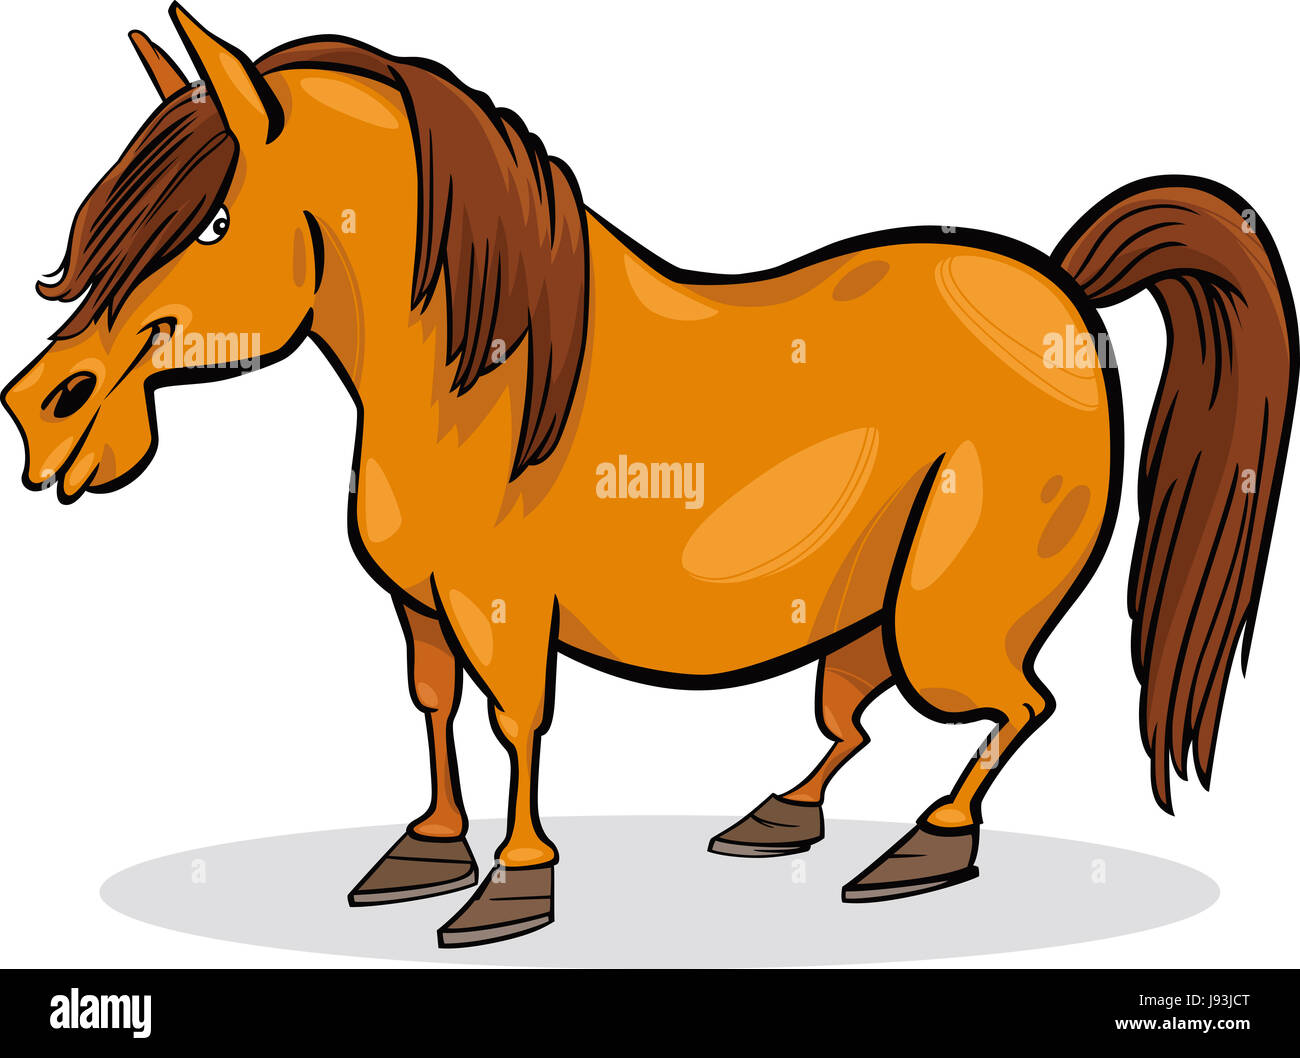 Les animaux, chevaux, illustration, poney, ferme, funny, cartoon, rire, rire, Banque D'Images